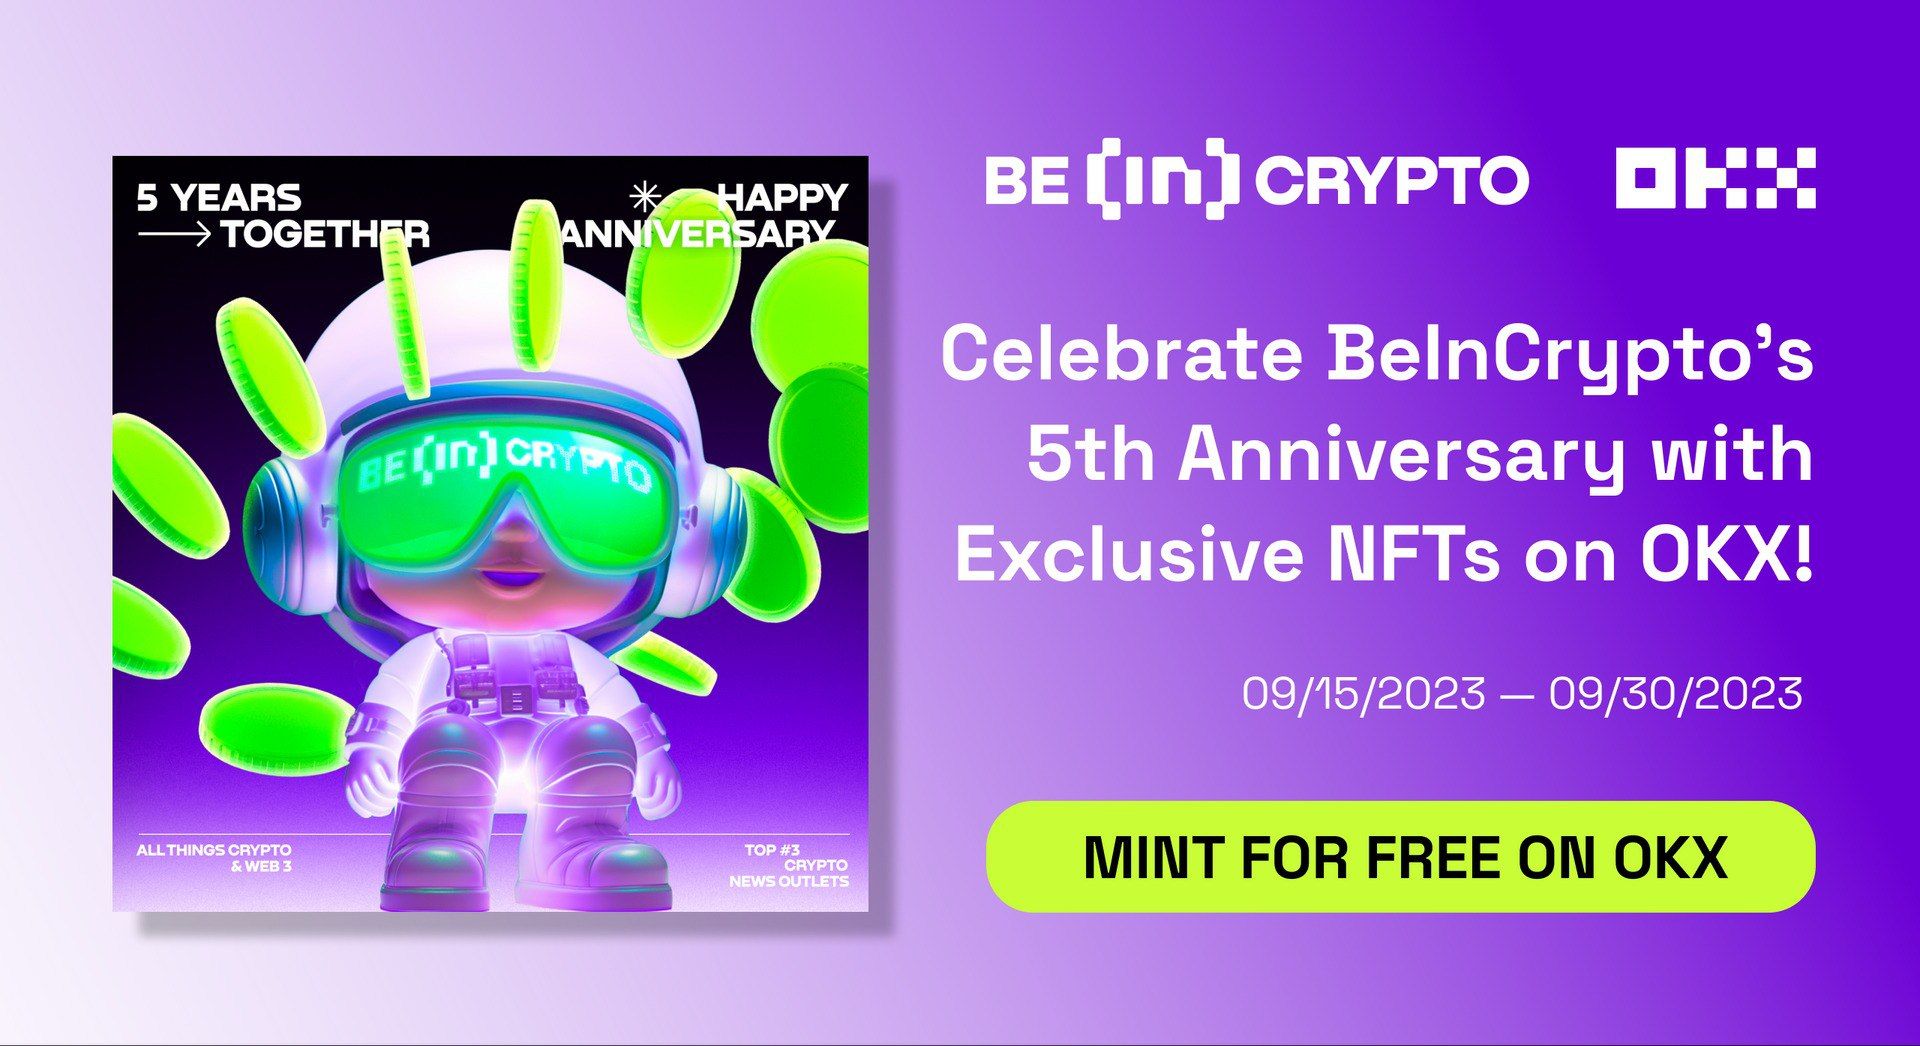 1. BeInCrypto & OKX NFT launch